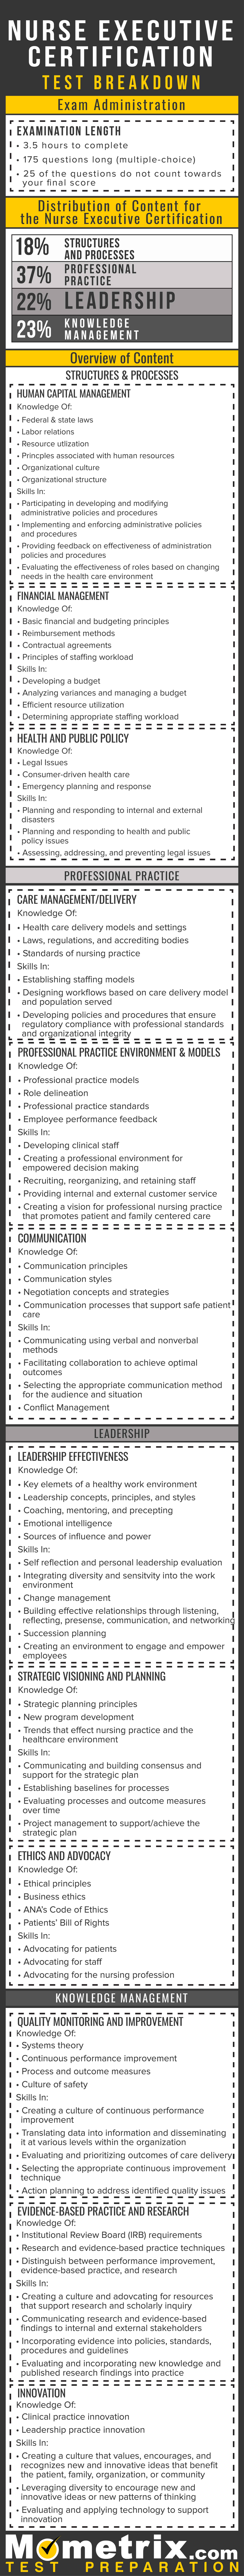 Nurse Executive Certification